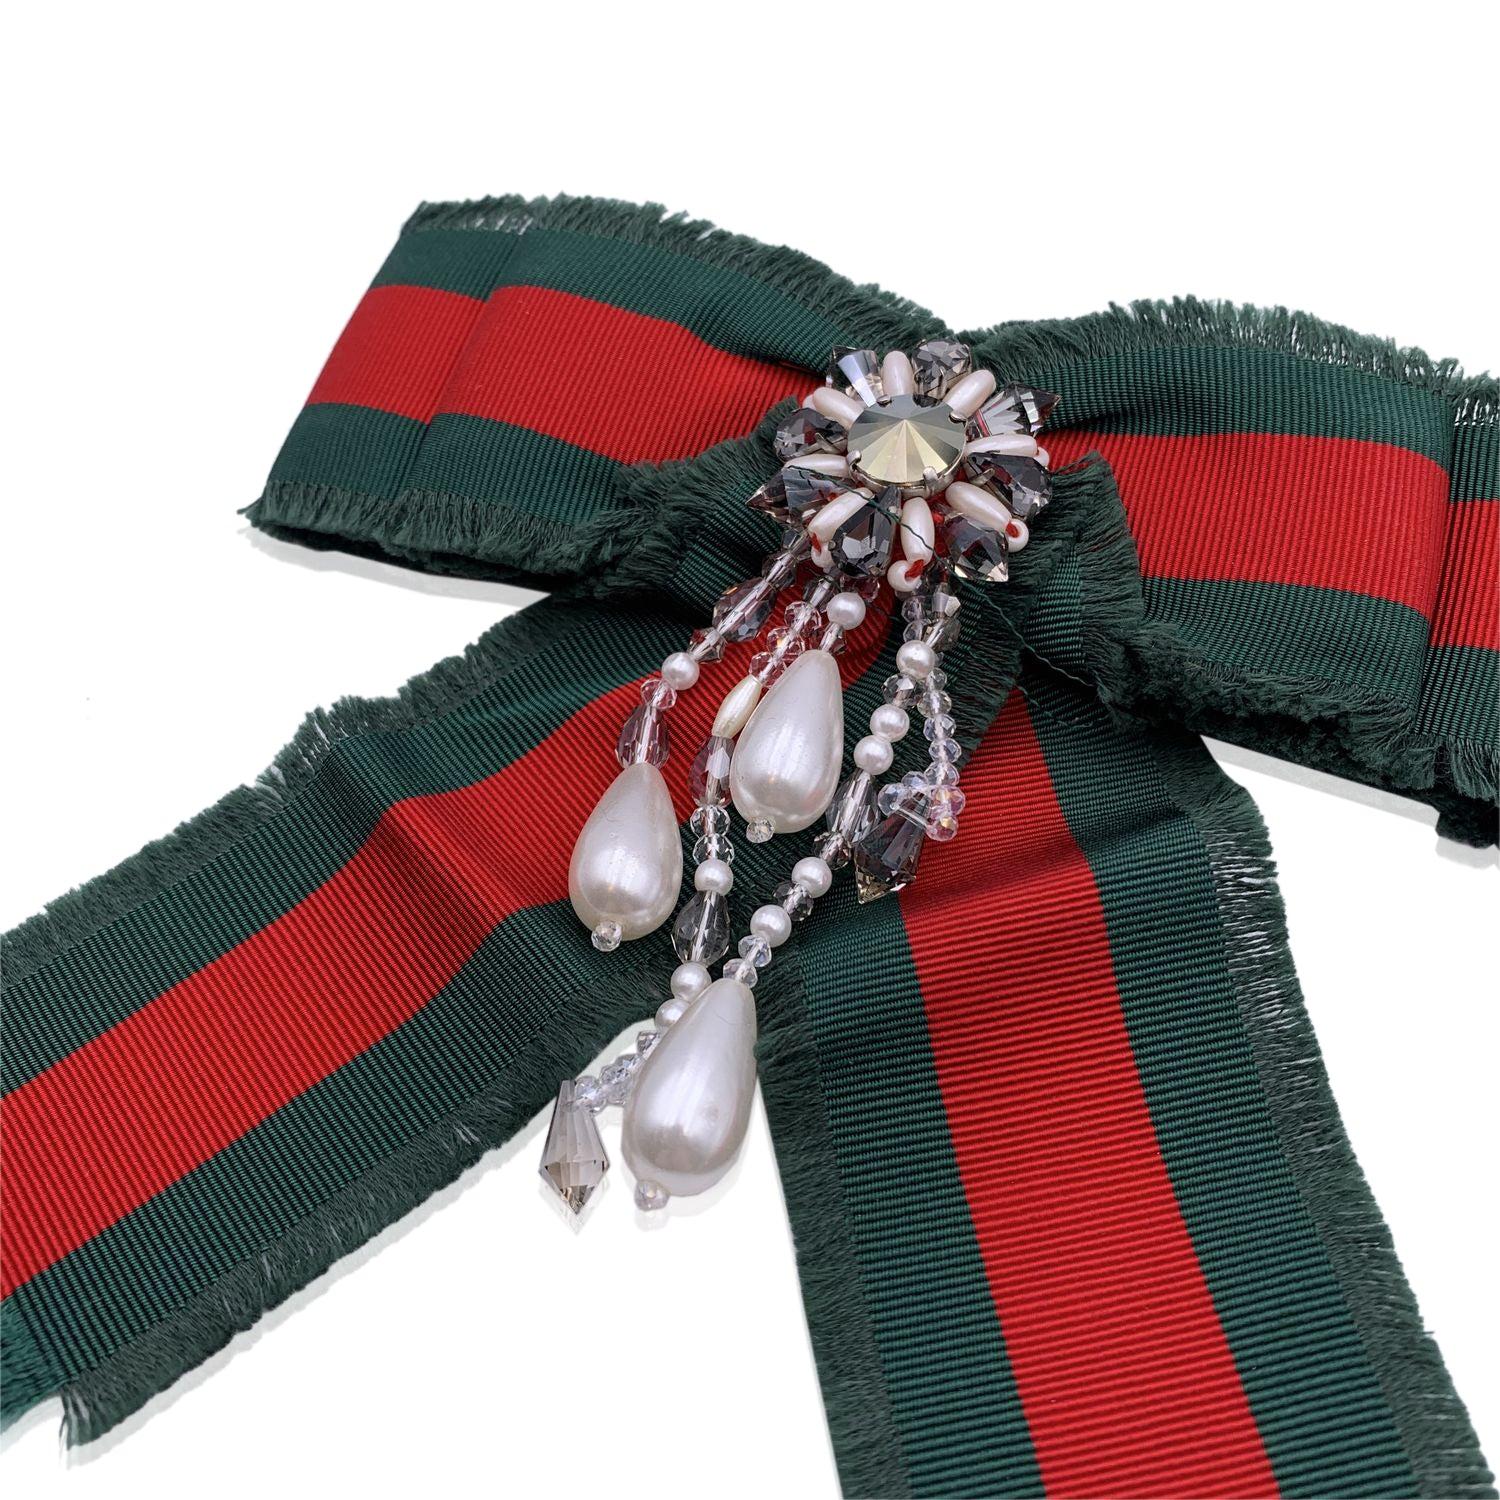 Gucci Red Green Grosgrain Bow Brooch Pin with Pearls and Crystals (épingle à broche avec nœud en gros-grain rouge et vert avec perles et cristaux) Excellent état à Rome, Rome